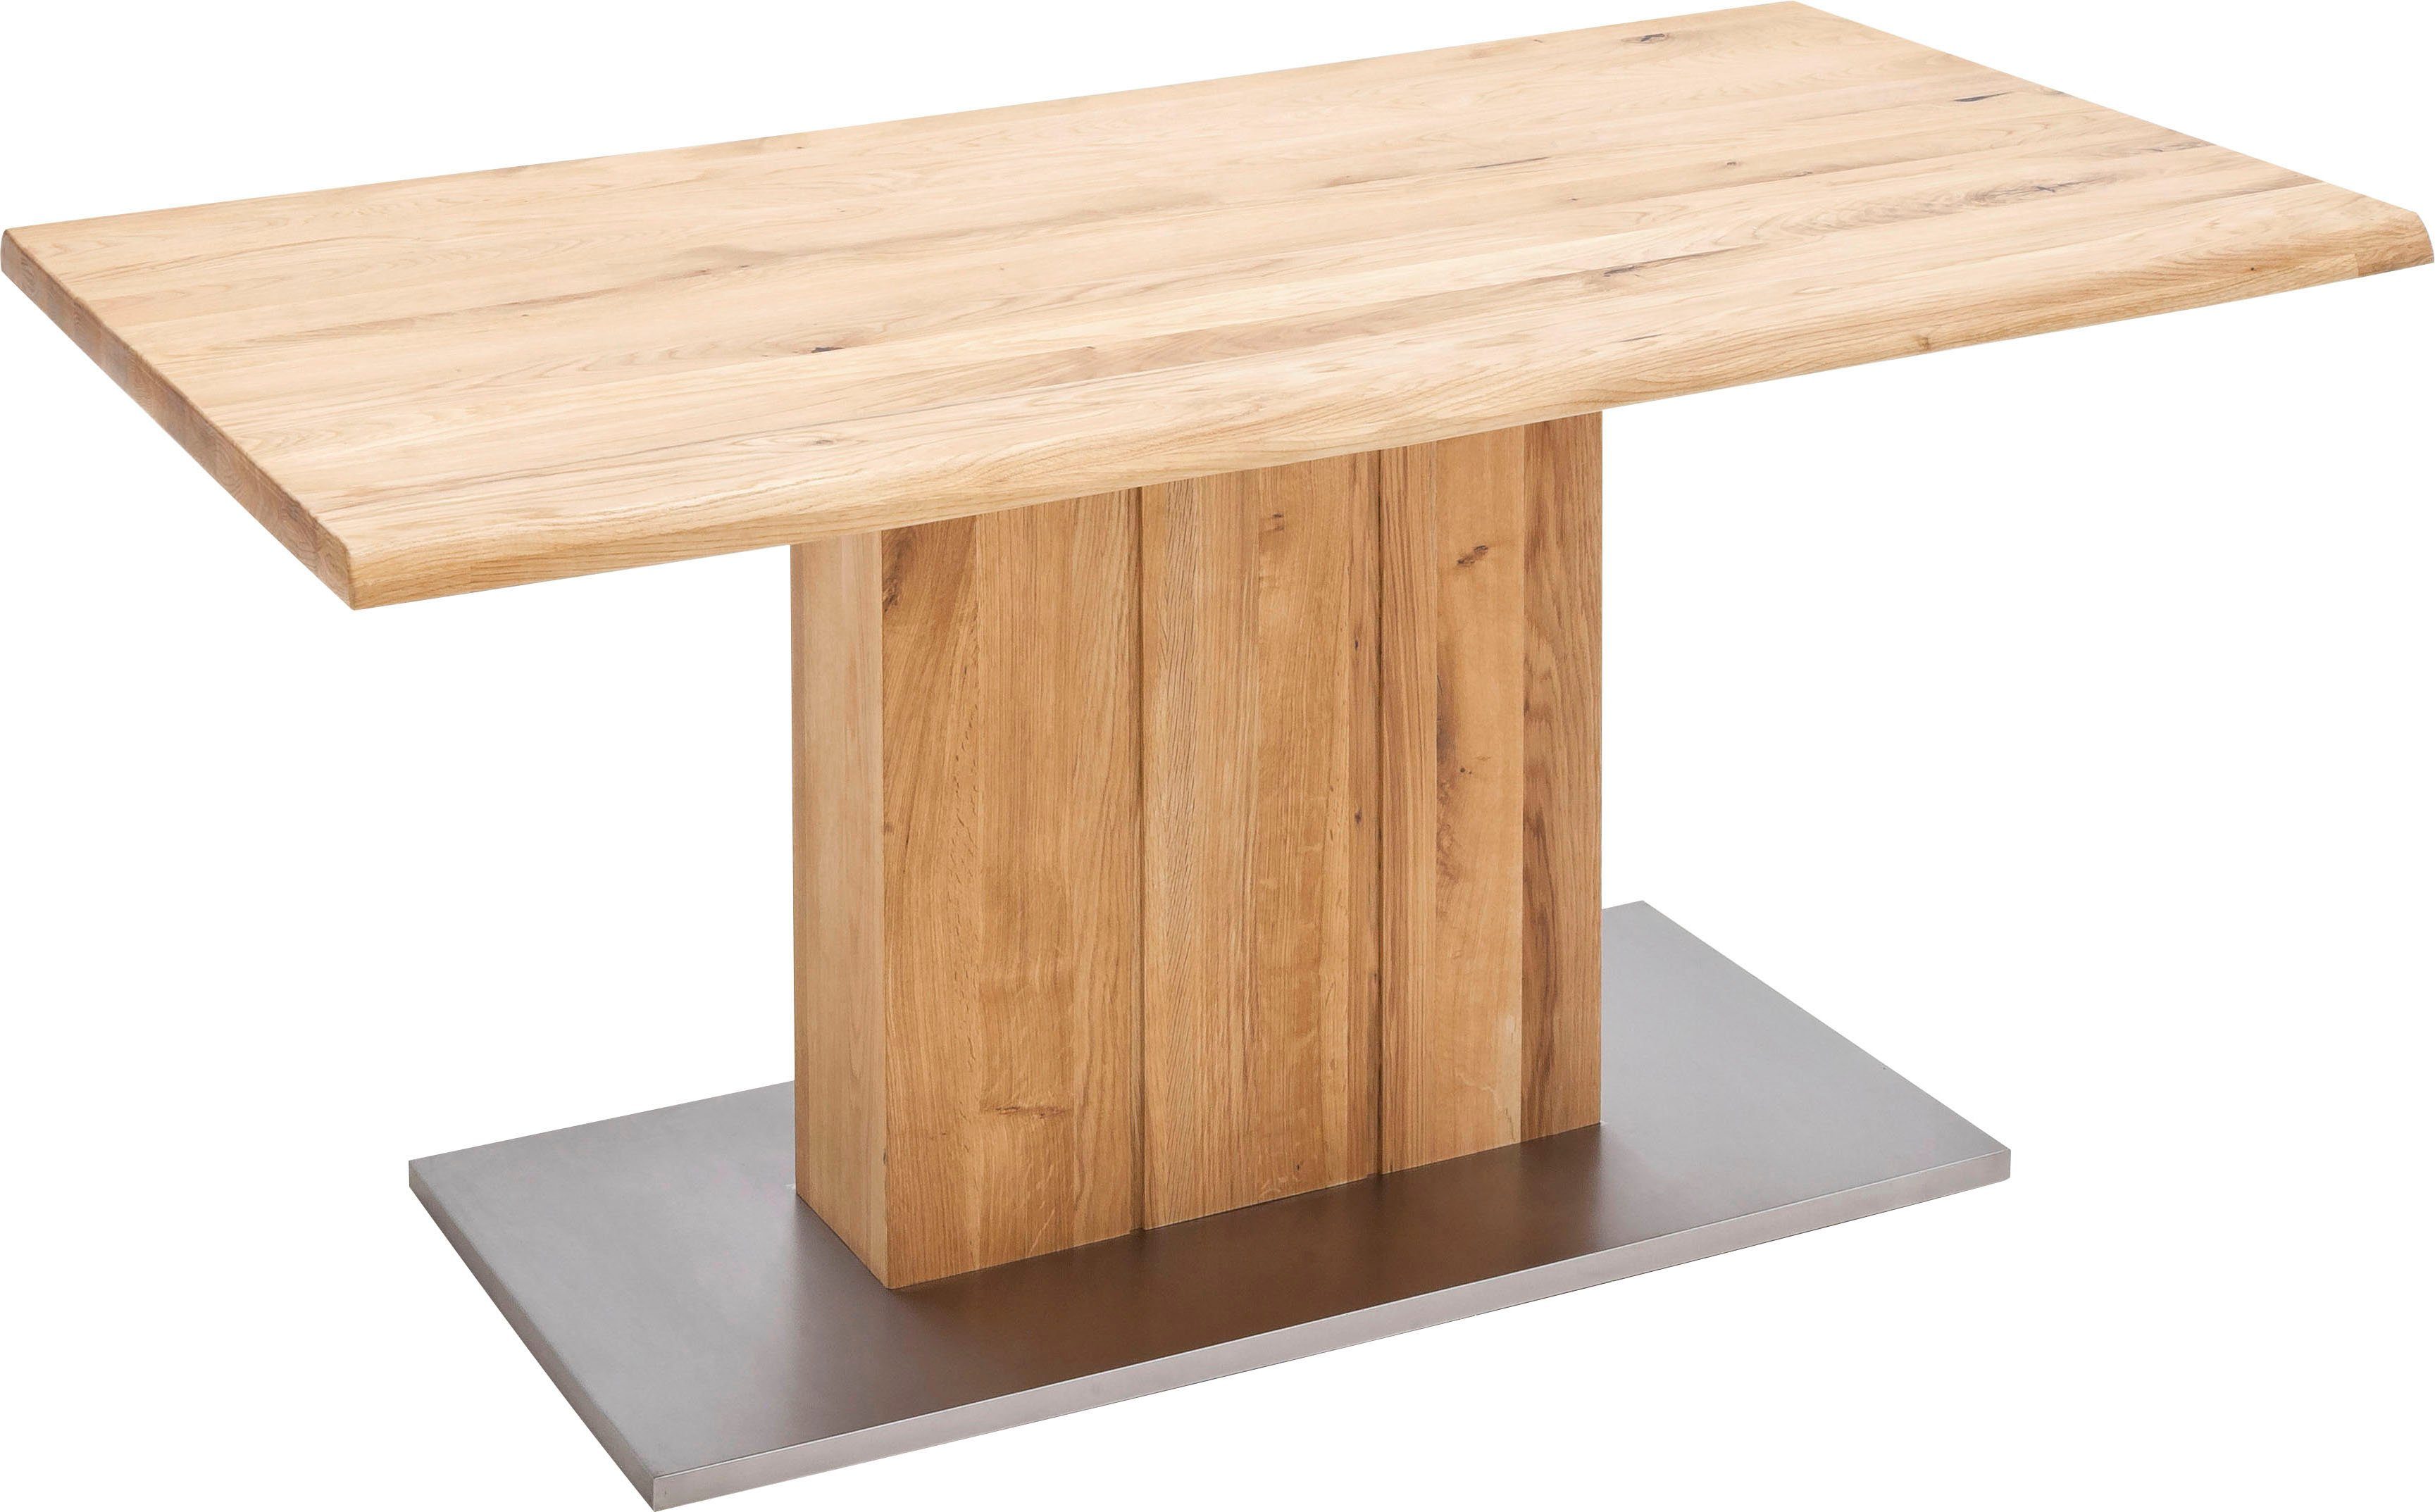 MCA furniture Eettafel Greta Eettafel massief hout met schaaldeel, rechte rand of gedeeld tafelblad